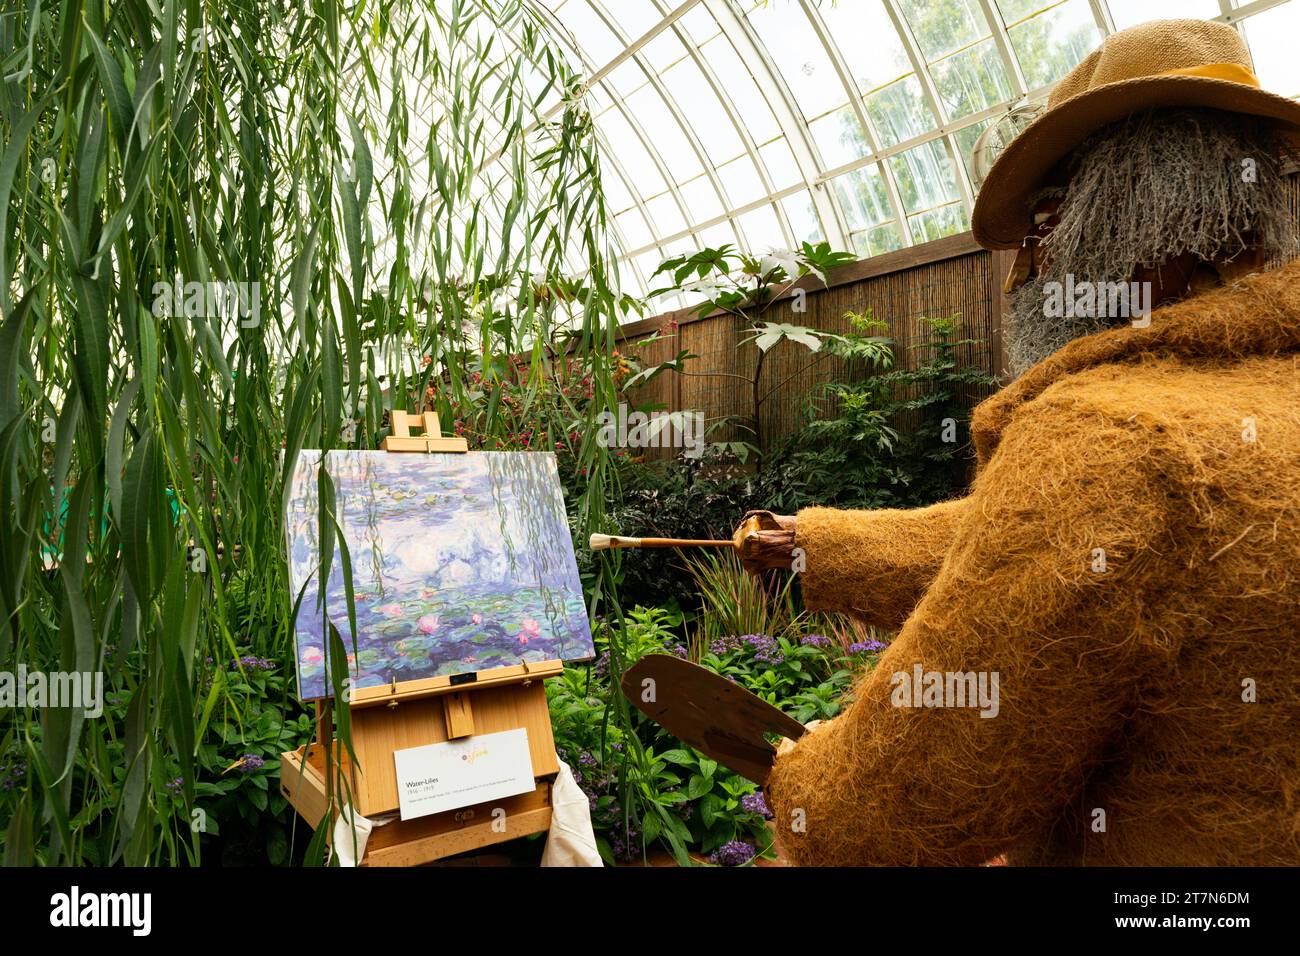 Pittsburgh, Pennsylvania, USA - Monet-Ausstellung im Phipps Botanical Garden mit Blumenfiguren, die die Szene in einem Monet-Gemälde darstellen. Stockfoto